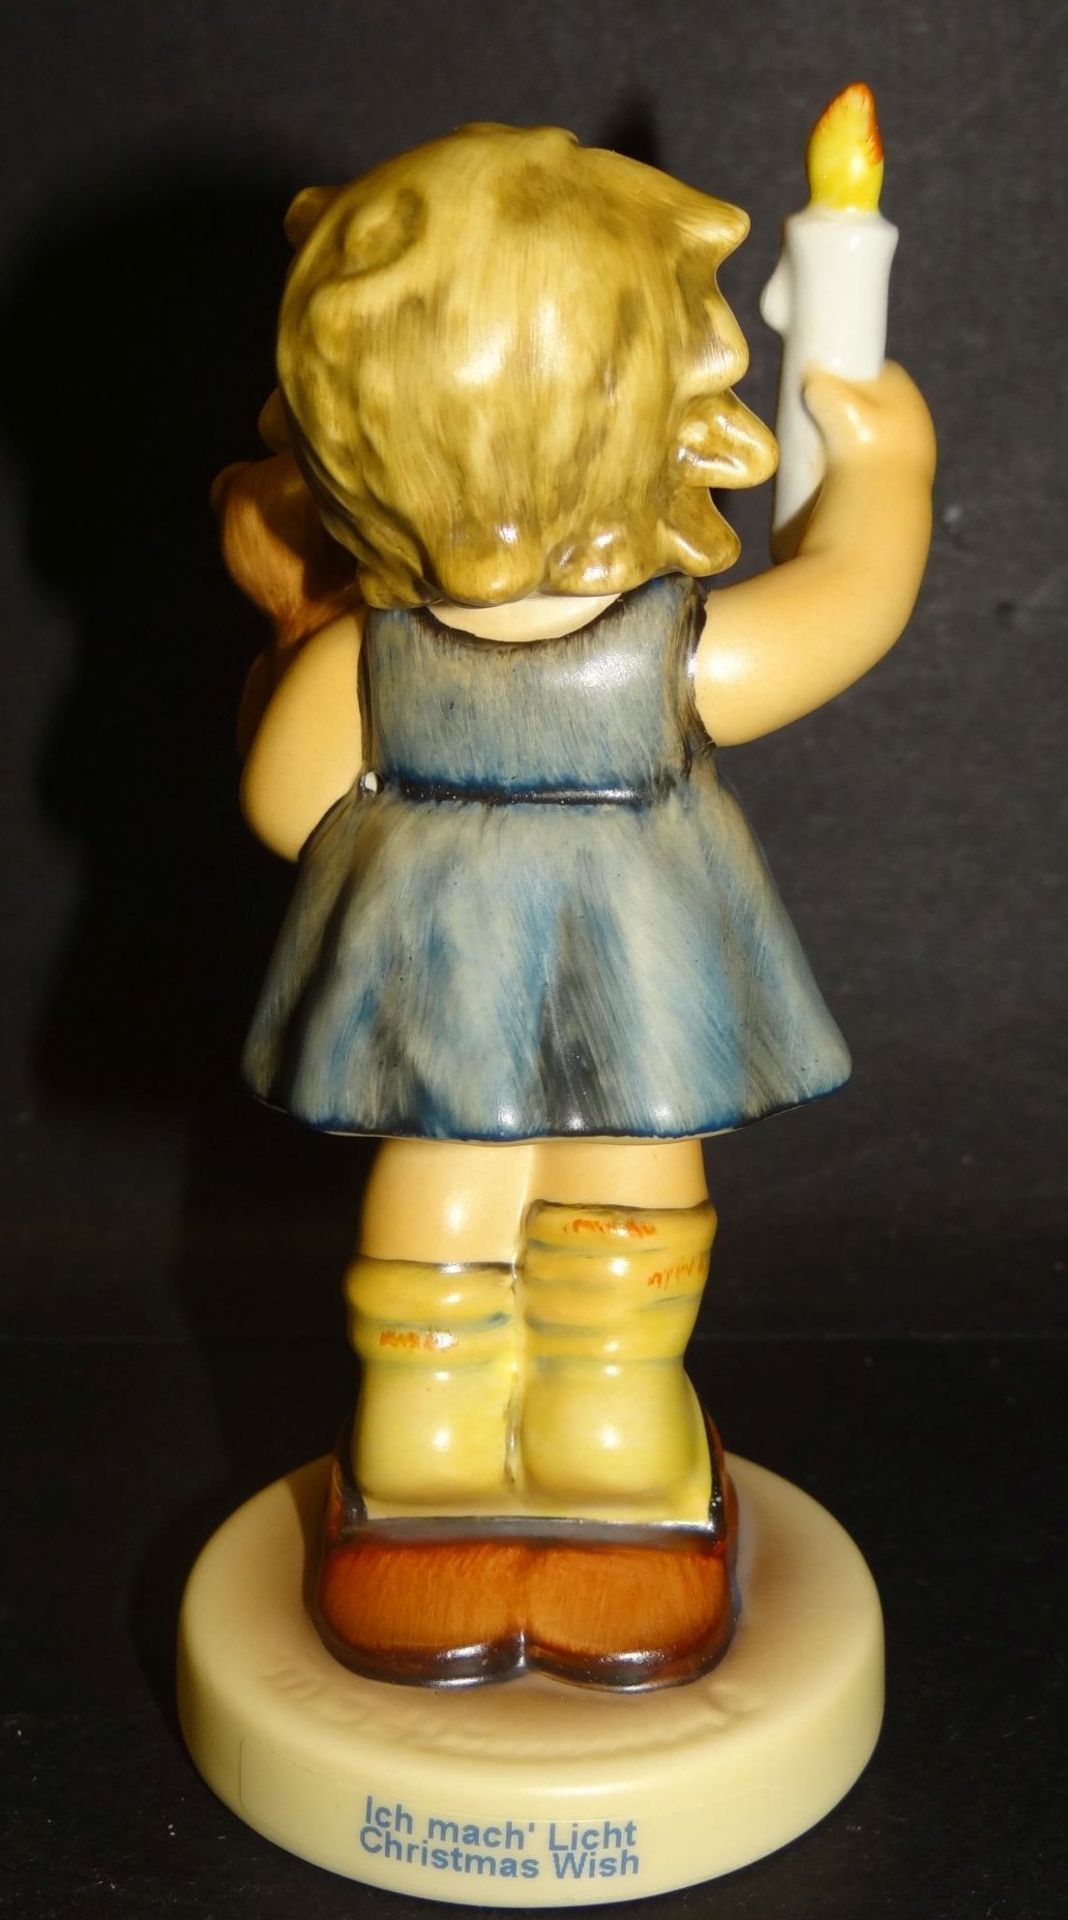 Hummel-Figur "Ich mach Licht" in orig. Karton, bemalt, H-11 cm, gut erhalten - Bild 4 aus 8